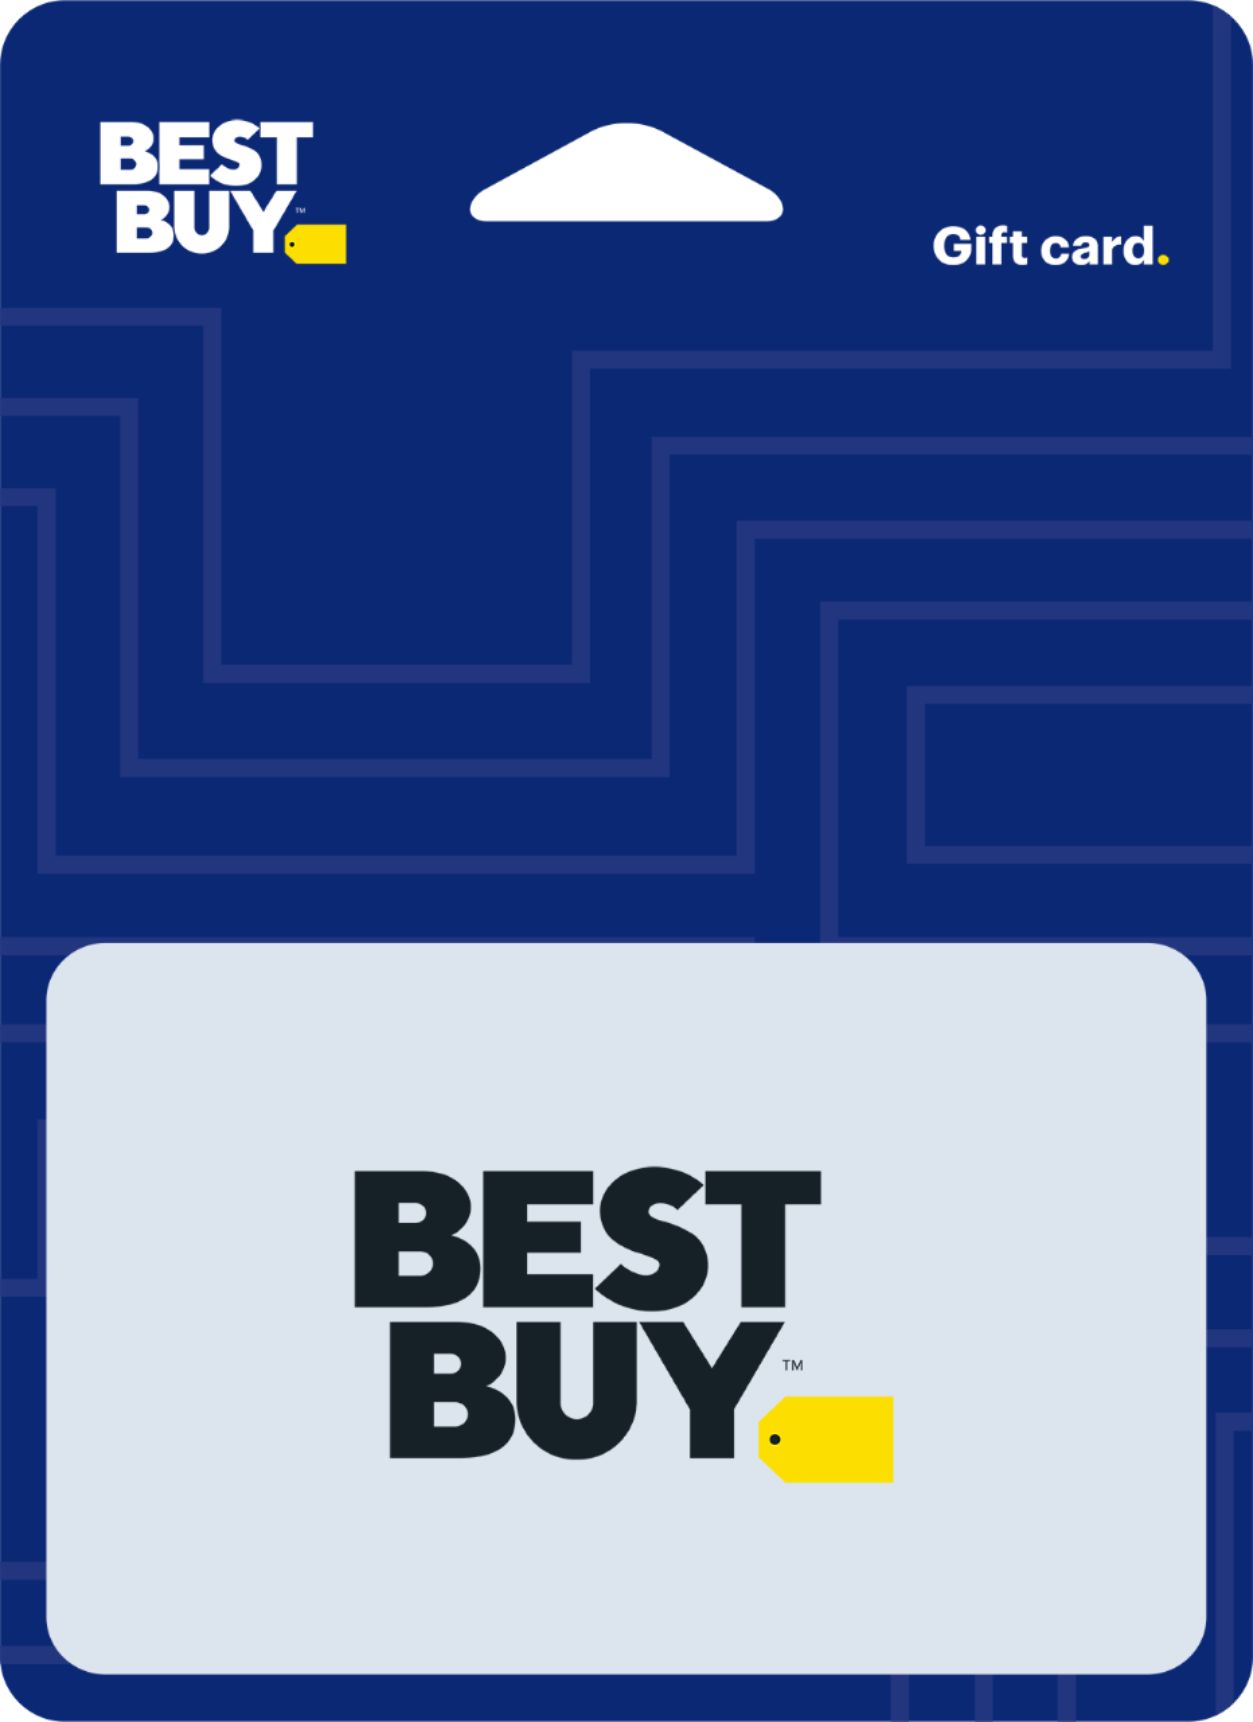 Best Buy® - $200 Best Buy white gift card